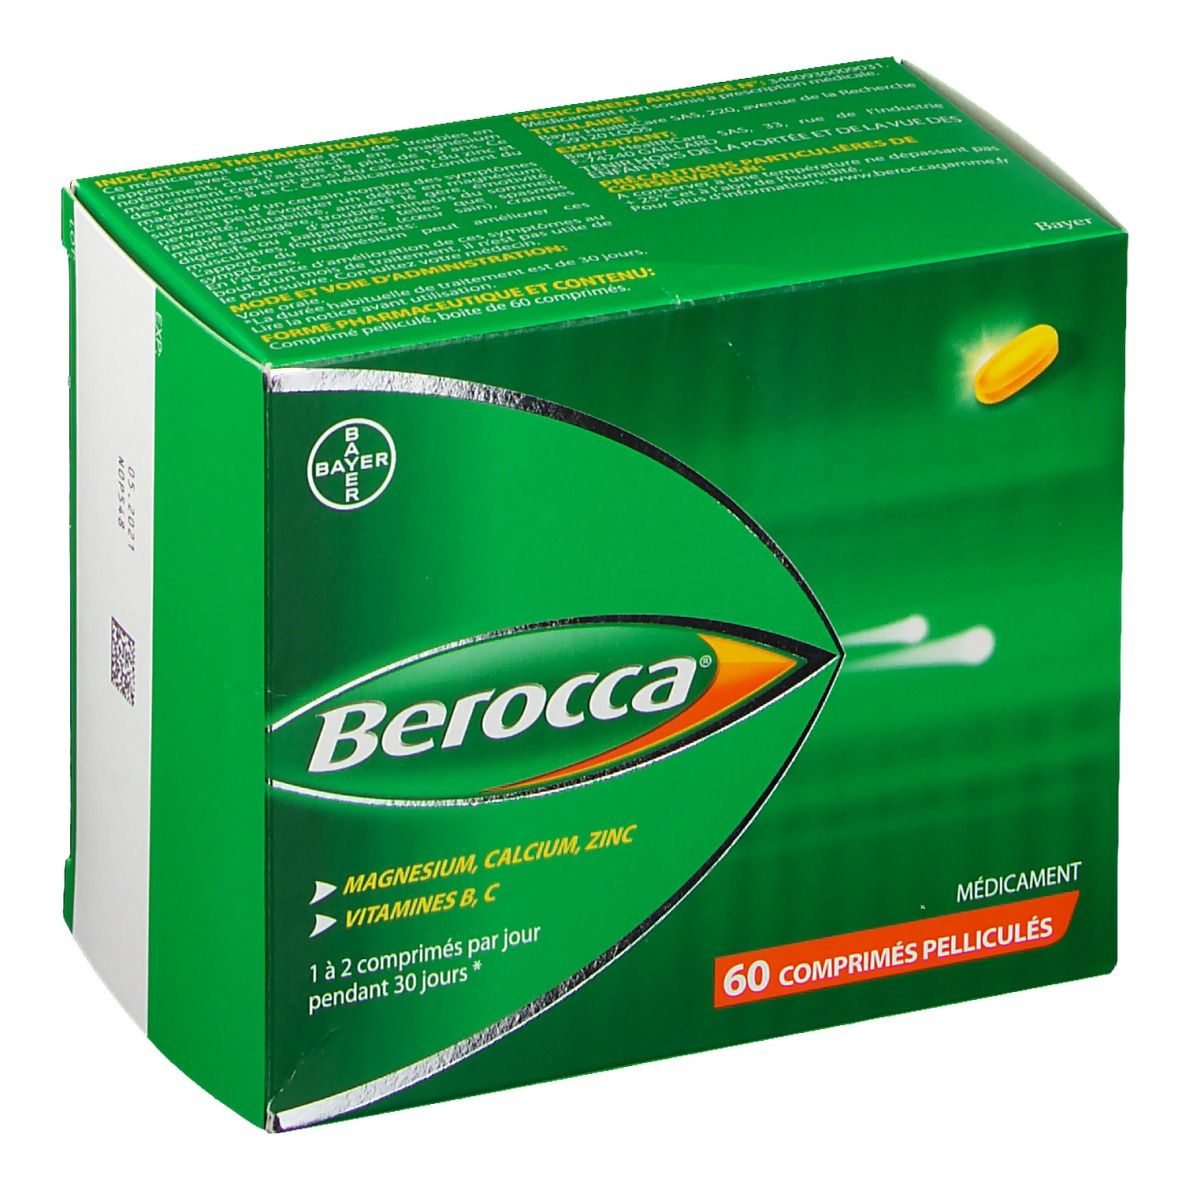 Berocca® Comprimés pelliculés - shop-pharmacie.fr